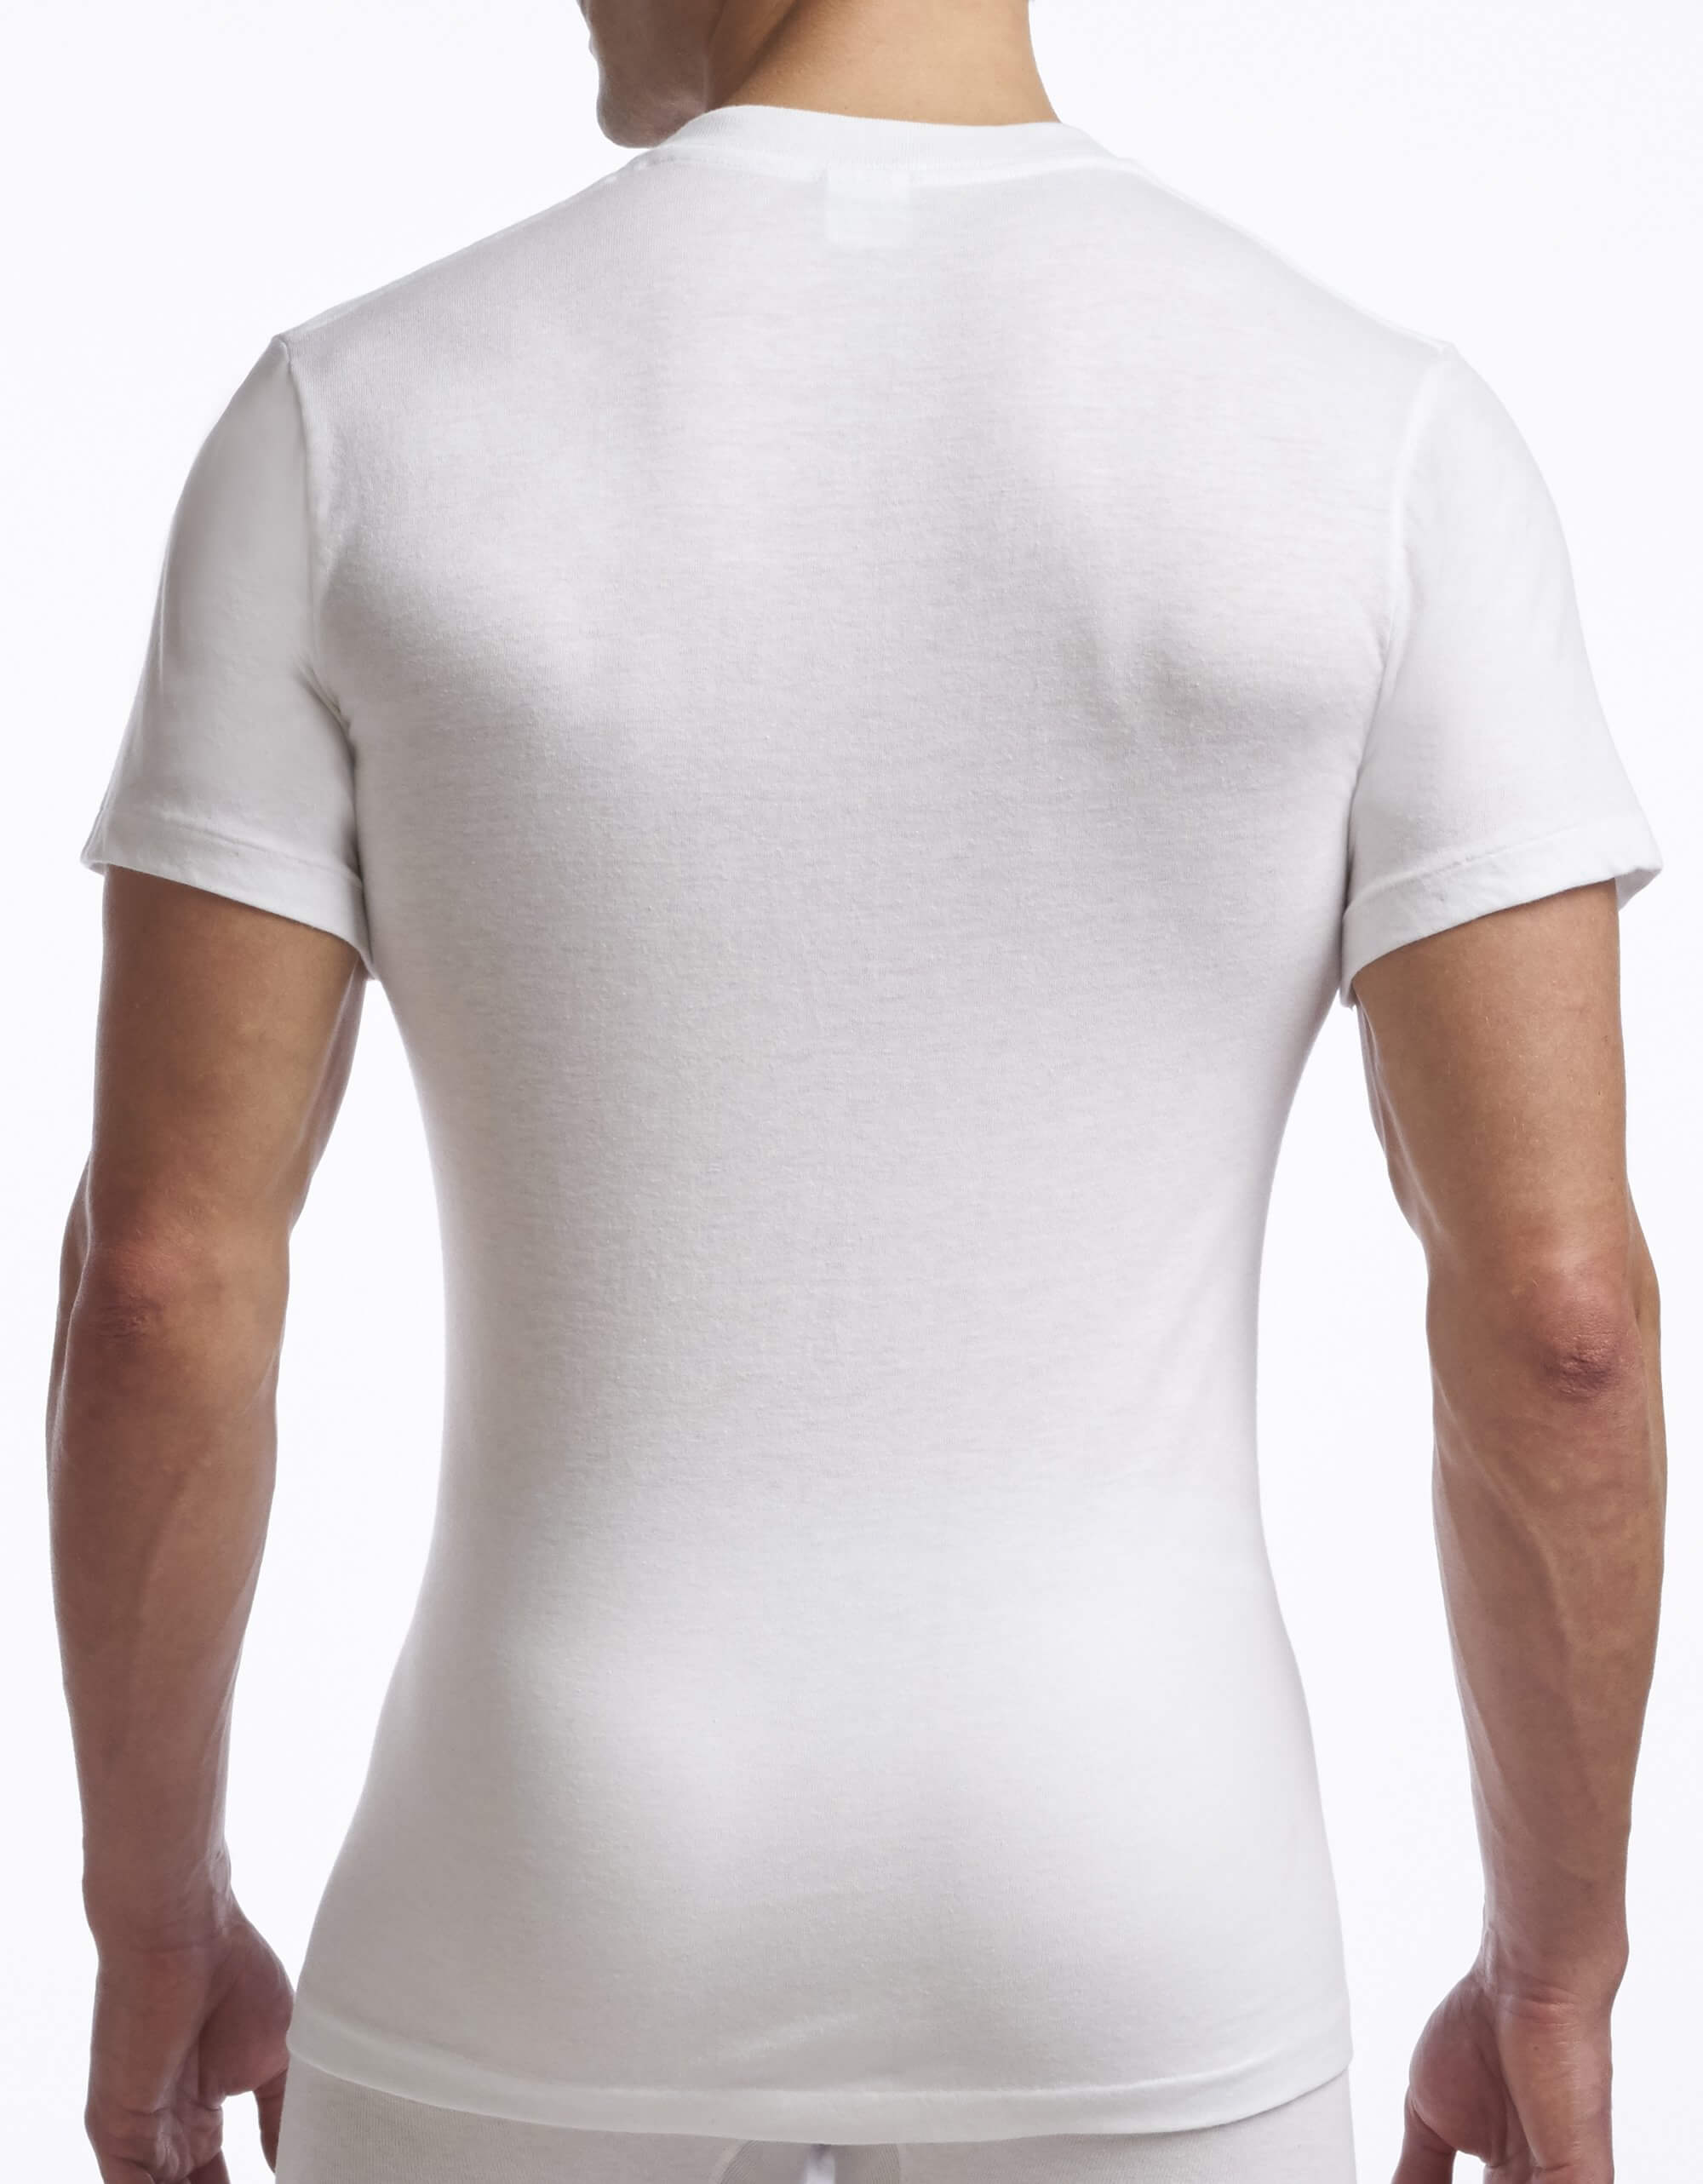 Men's Cotton Blend Crewneck T-shirt - 2 pack